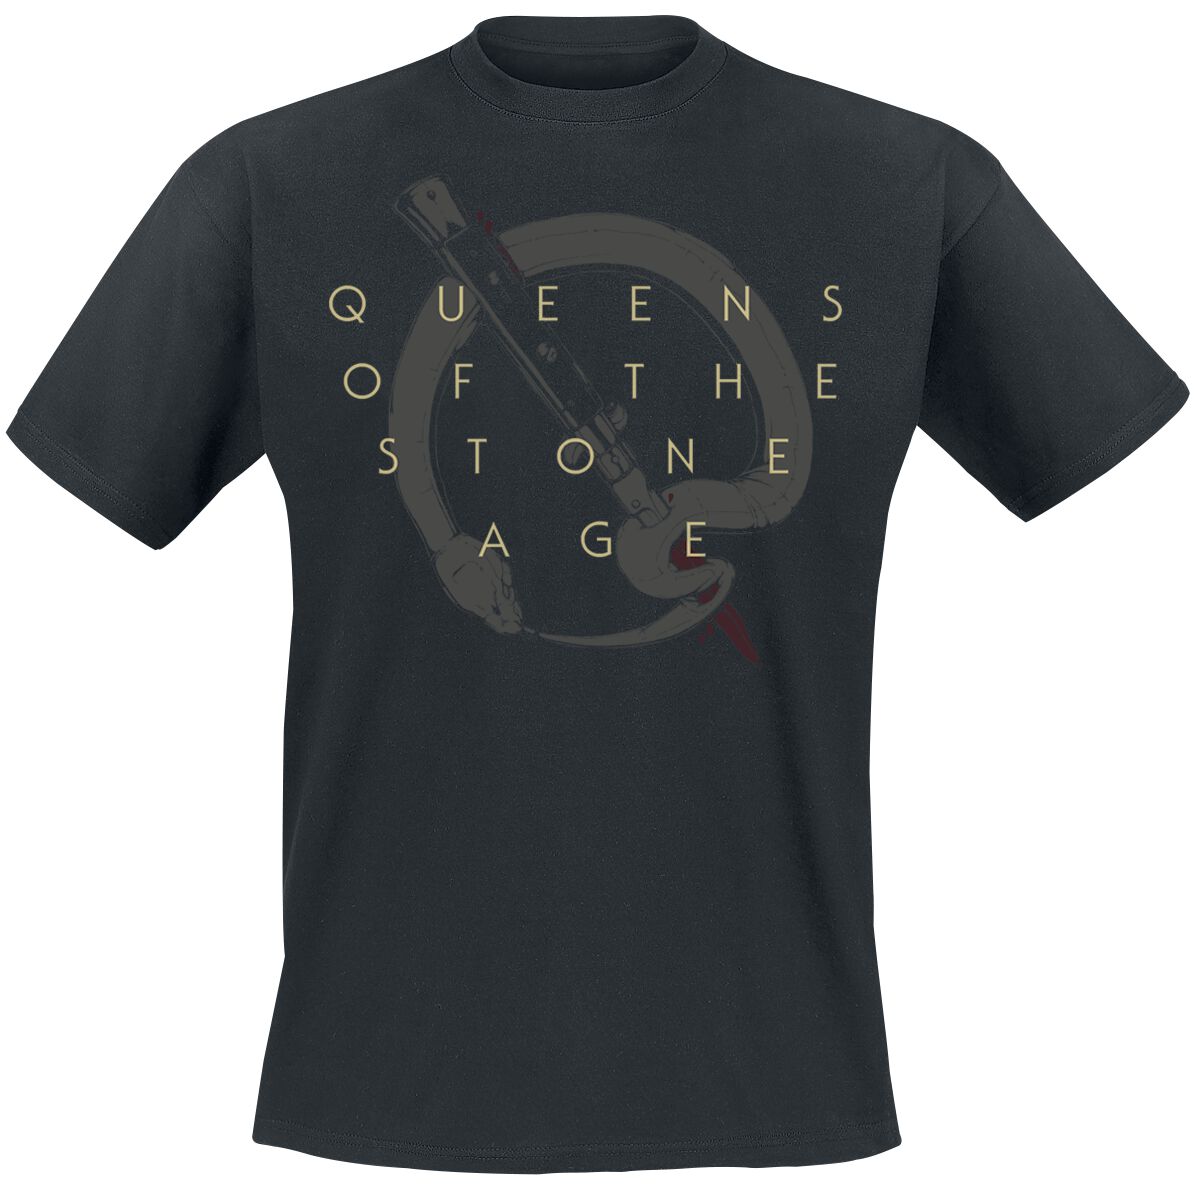 Queens Of The Stone Age T-Shirt - In Times New Roman - Bad Dog - S bis 3XL - für Männer - Größe XL - schwarz  - Lizenziertes Merchandise!